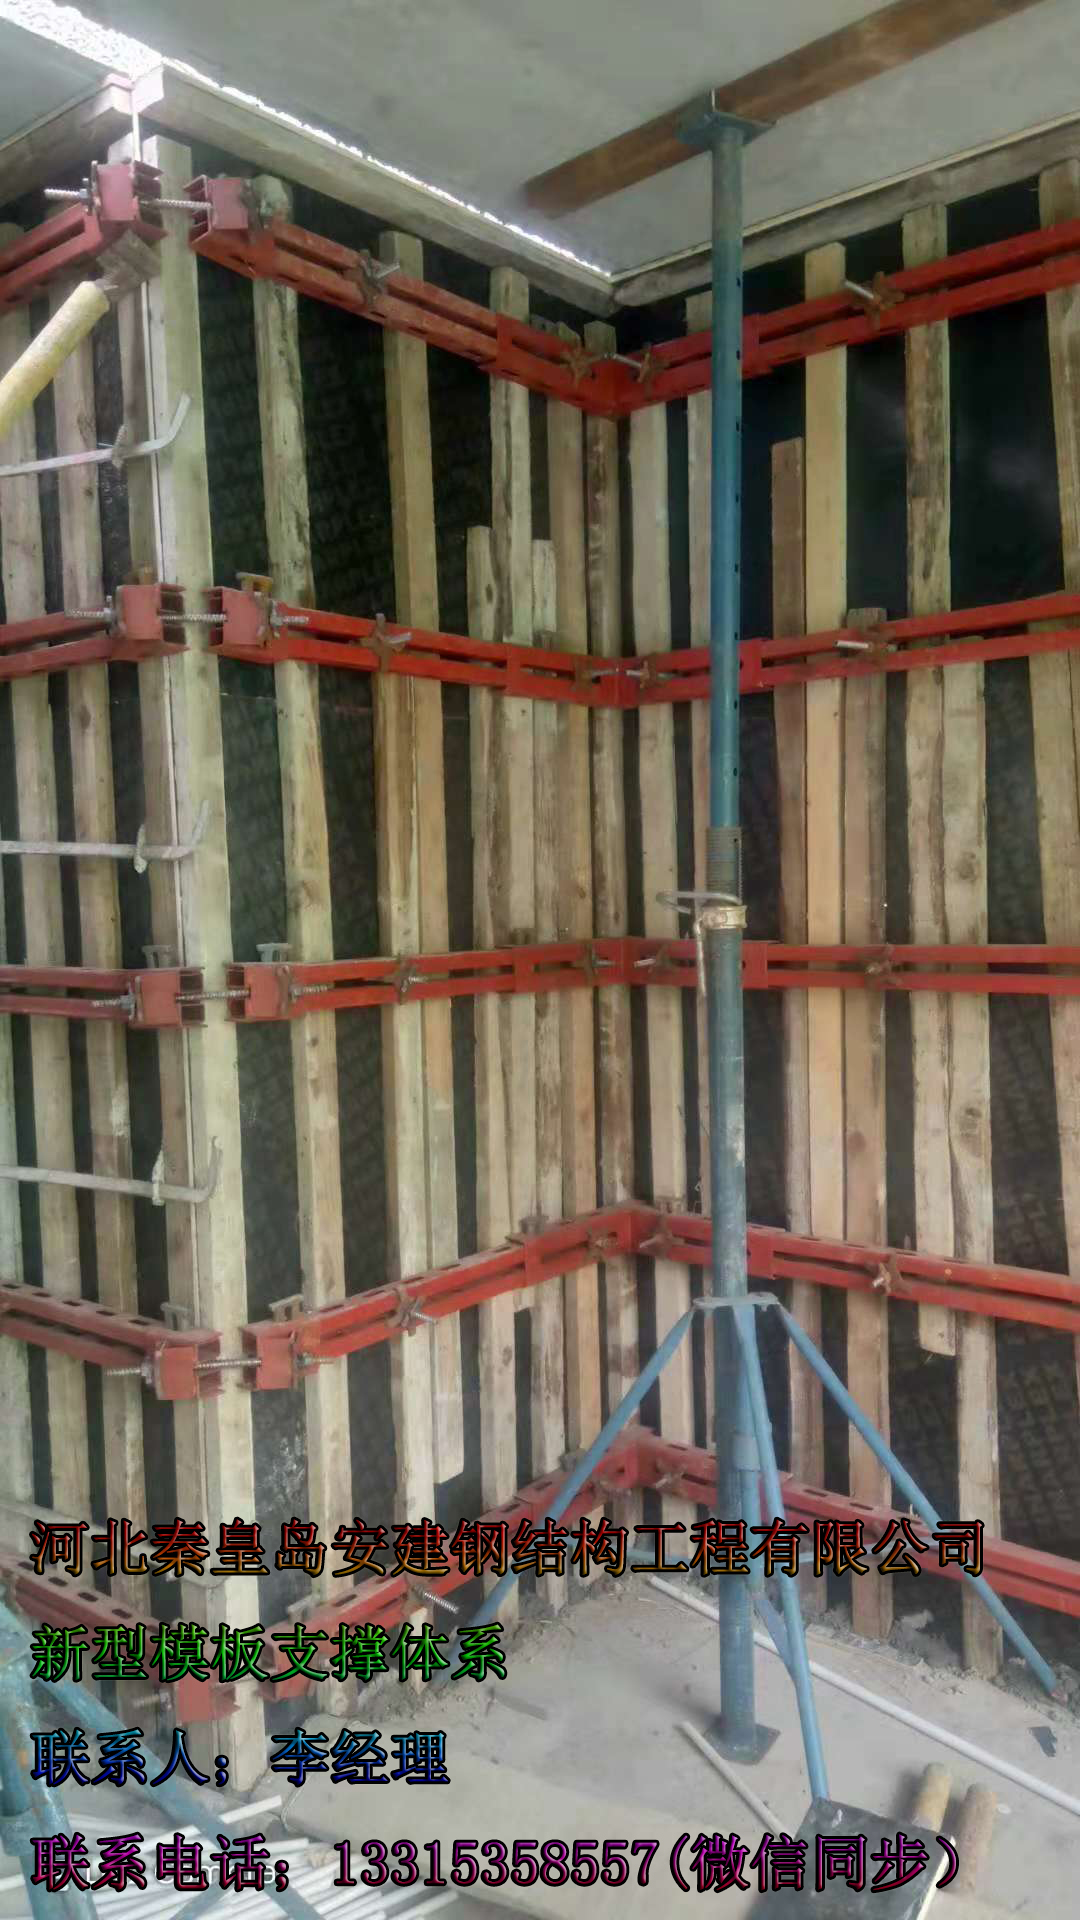 湖南长沙建筑模板生成厂家直销批发咨询报价电话号码  新型剪力墙模板样板图片 建筑模板支撑